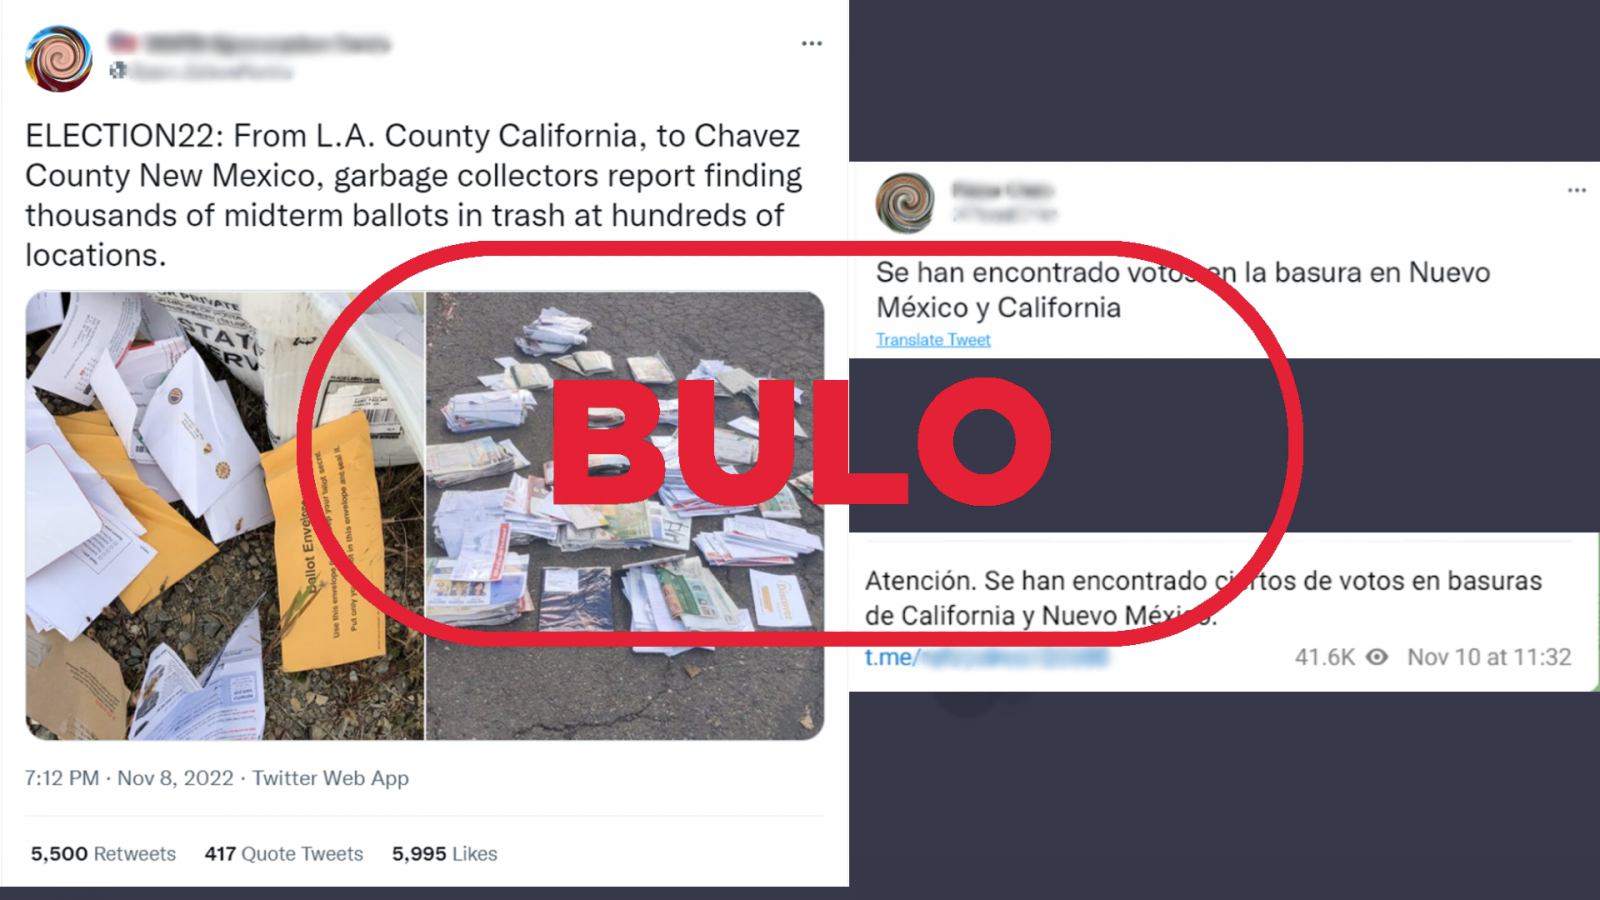 Mensajes de redes que comparten imágenes de papeletas en la basura asegurando que son imágenes actuales en California y Nuevo México, con el sello de bulo de VerificaRTVE